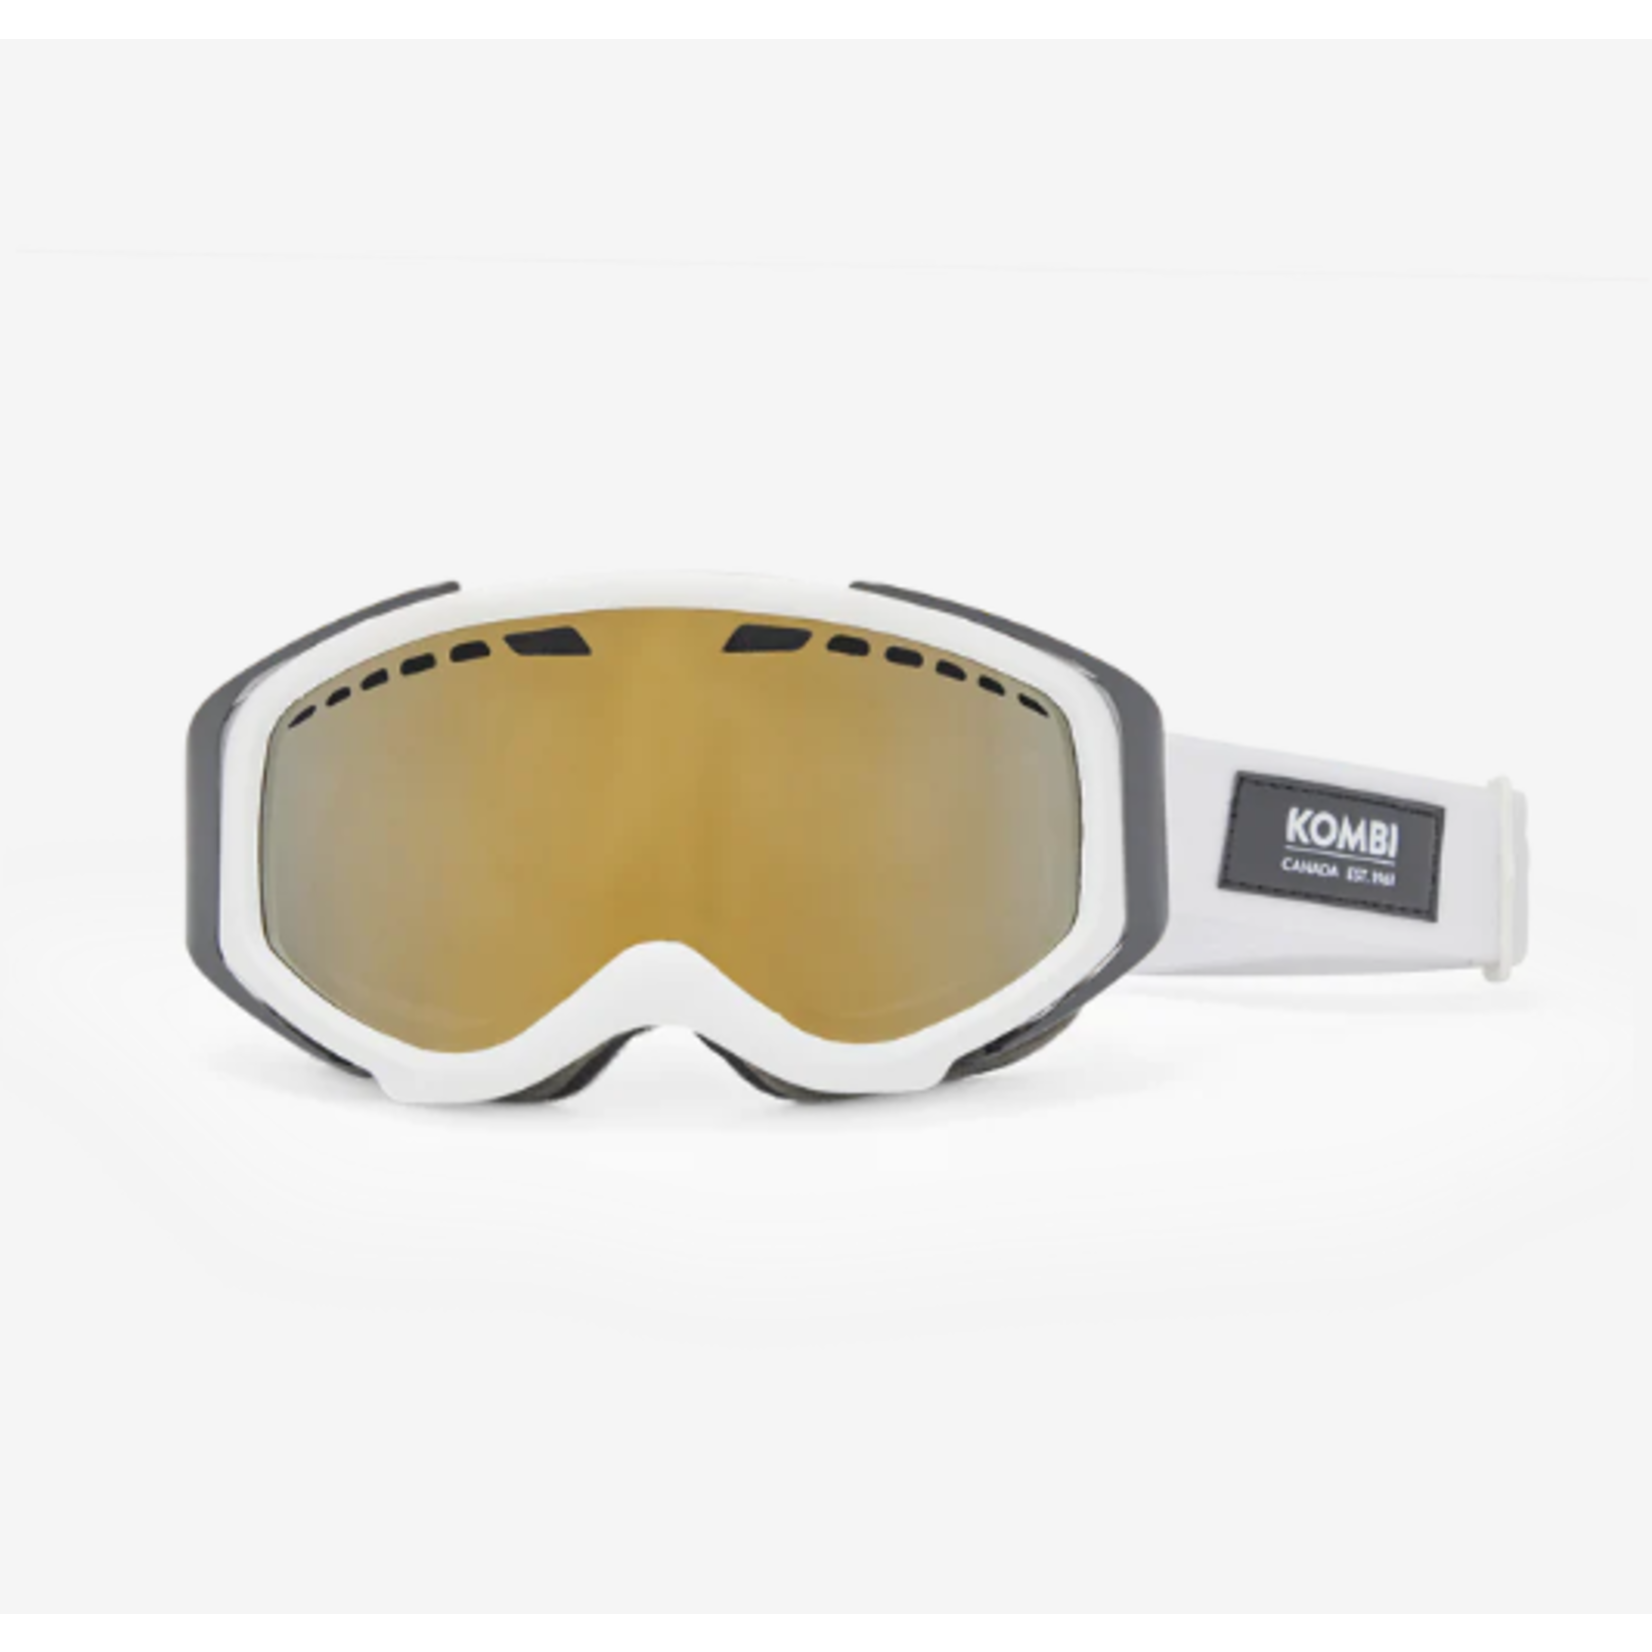 Kombi Fastlane Ski Goggles for Strong Sunlight - White - Junior